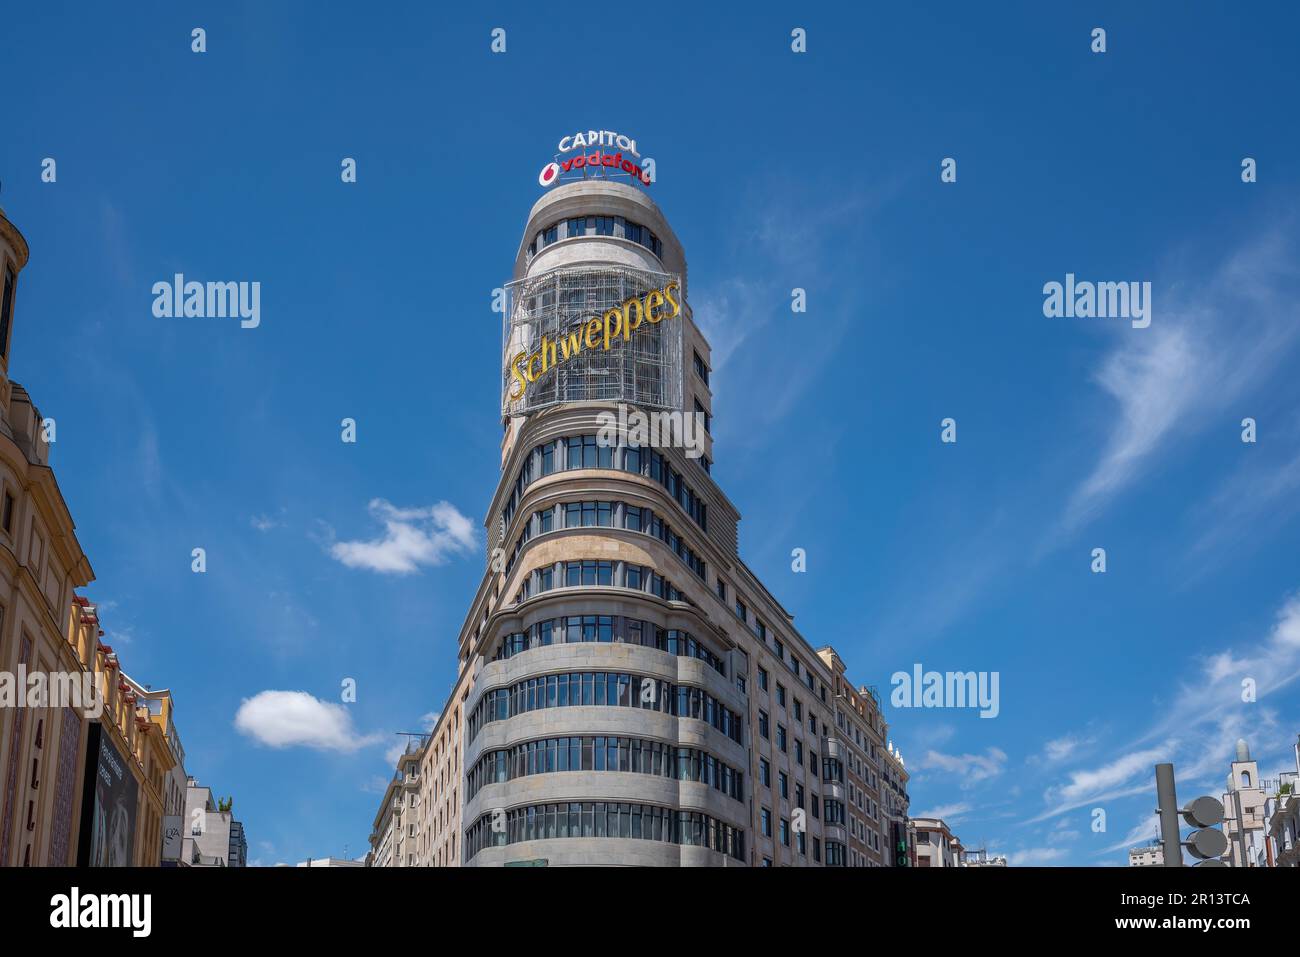 Edificio Capitol (oder Carrion) Gebäude mit berühmtem Schweppes Schild an der Gran Via Straße - Madrid, Spanien Stockfoto